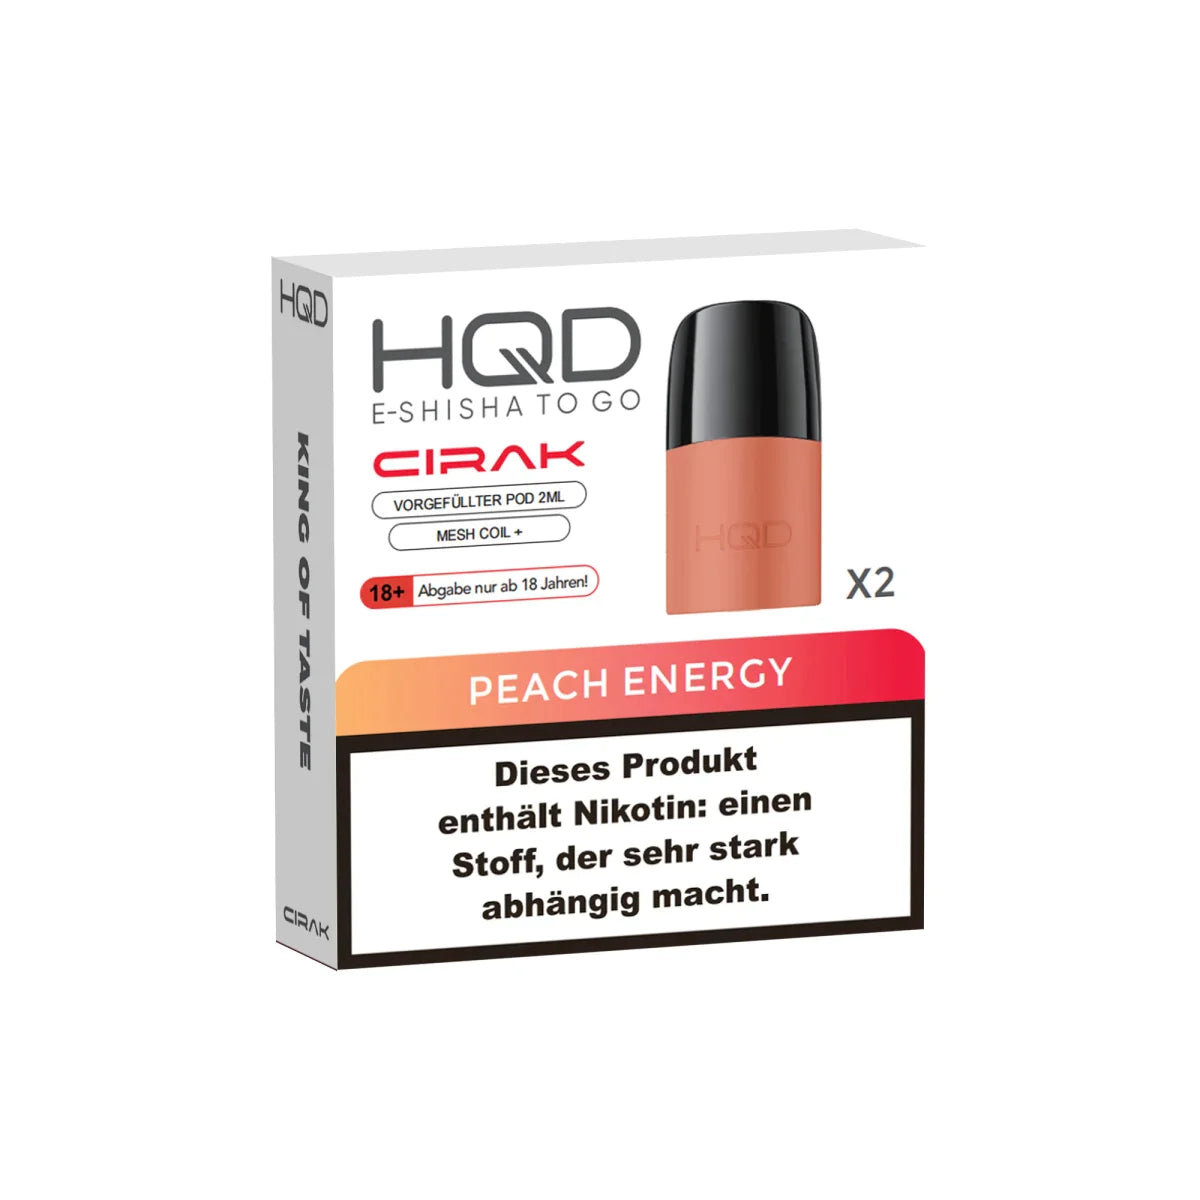 HQD Cirak Pods | 2 x 2ml | Peach Energy